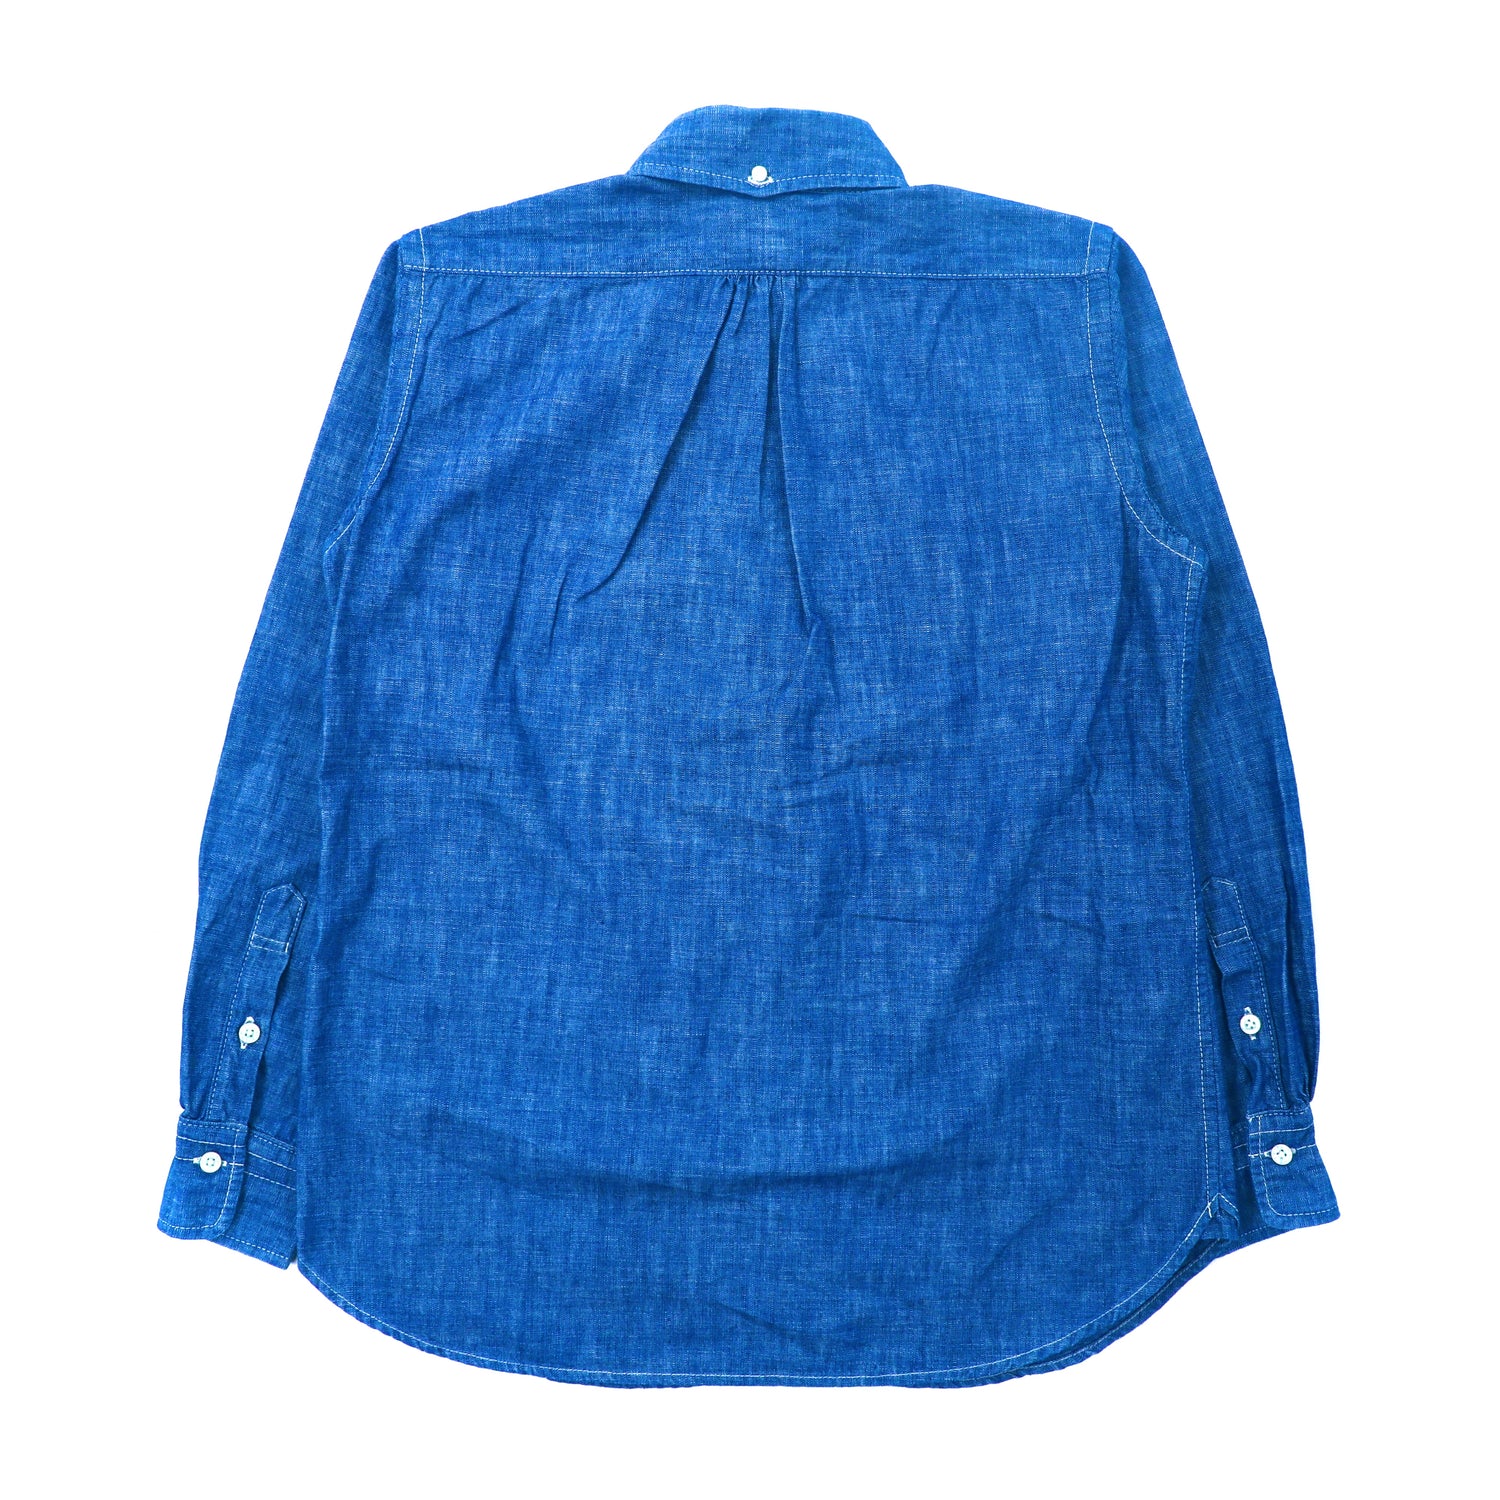 EVISU エヴィス シャツ サイズ:38(M) オープンカラー シャンブレー 半袖 シャツ ブルー ボックスシルエット トップス カジュアルシャツ 【メンズ】